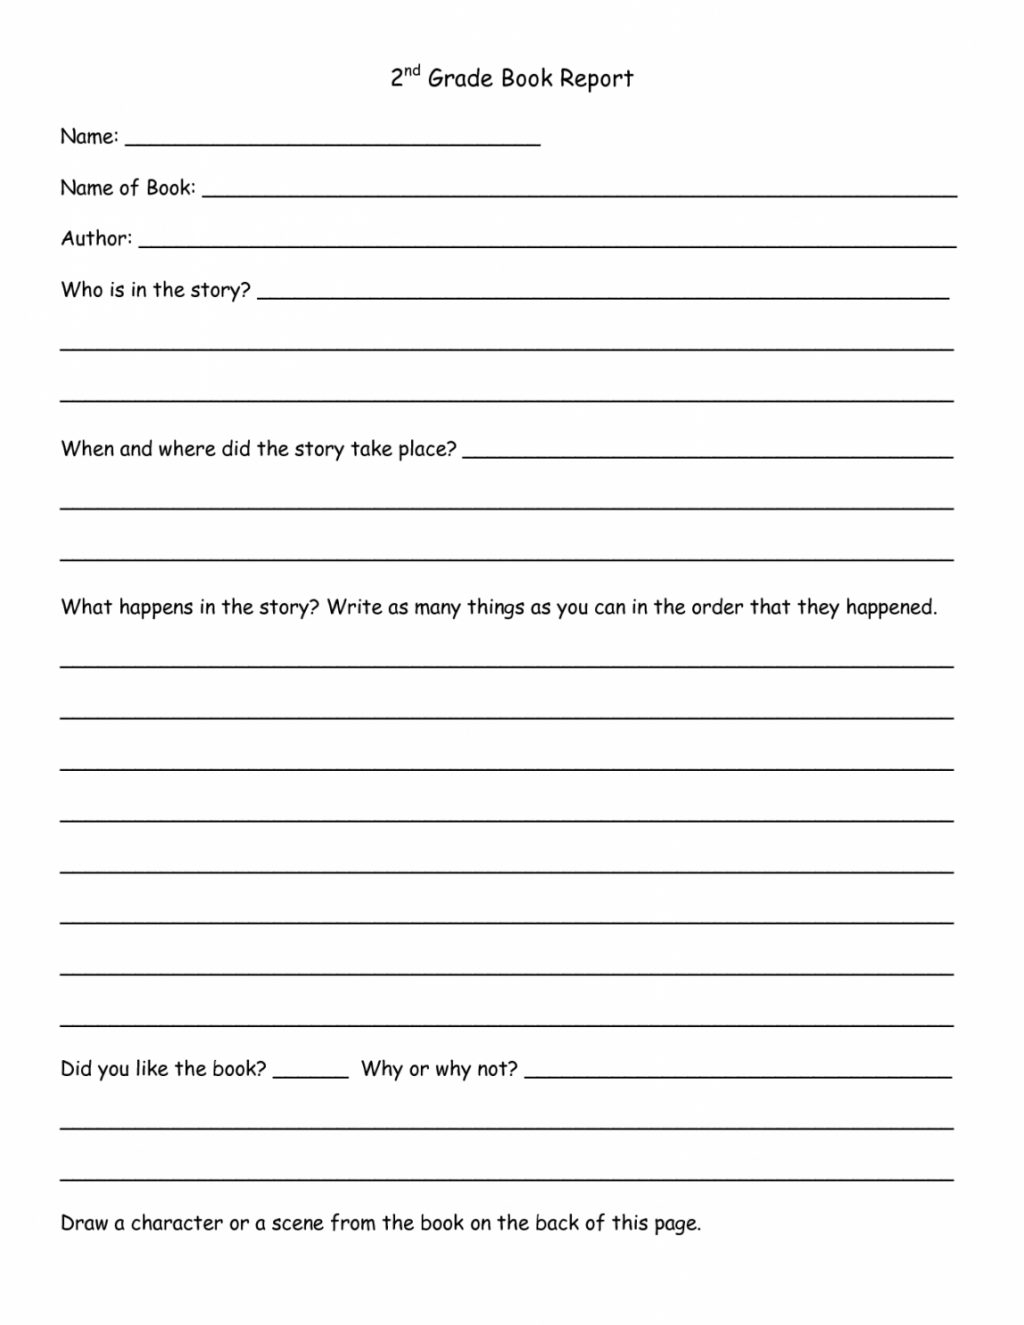 Worksheet Ideas ~ Book Report Template 1St Grade Kola For 1St Grade Book Report Template